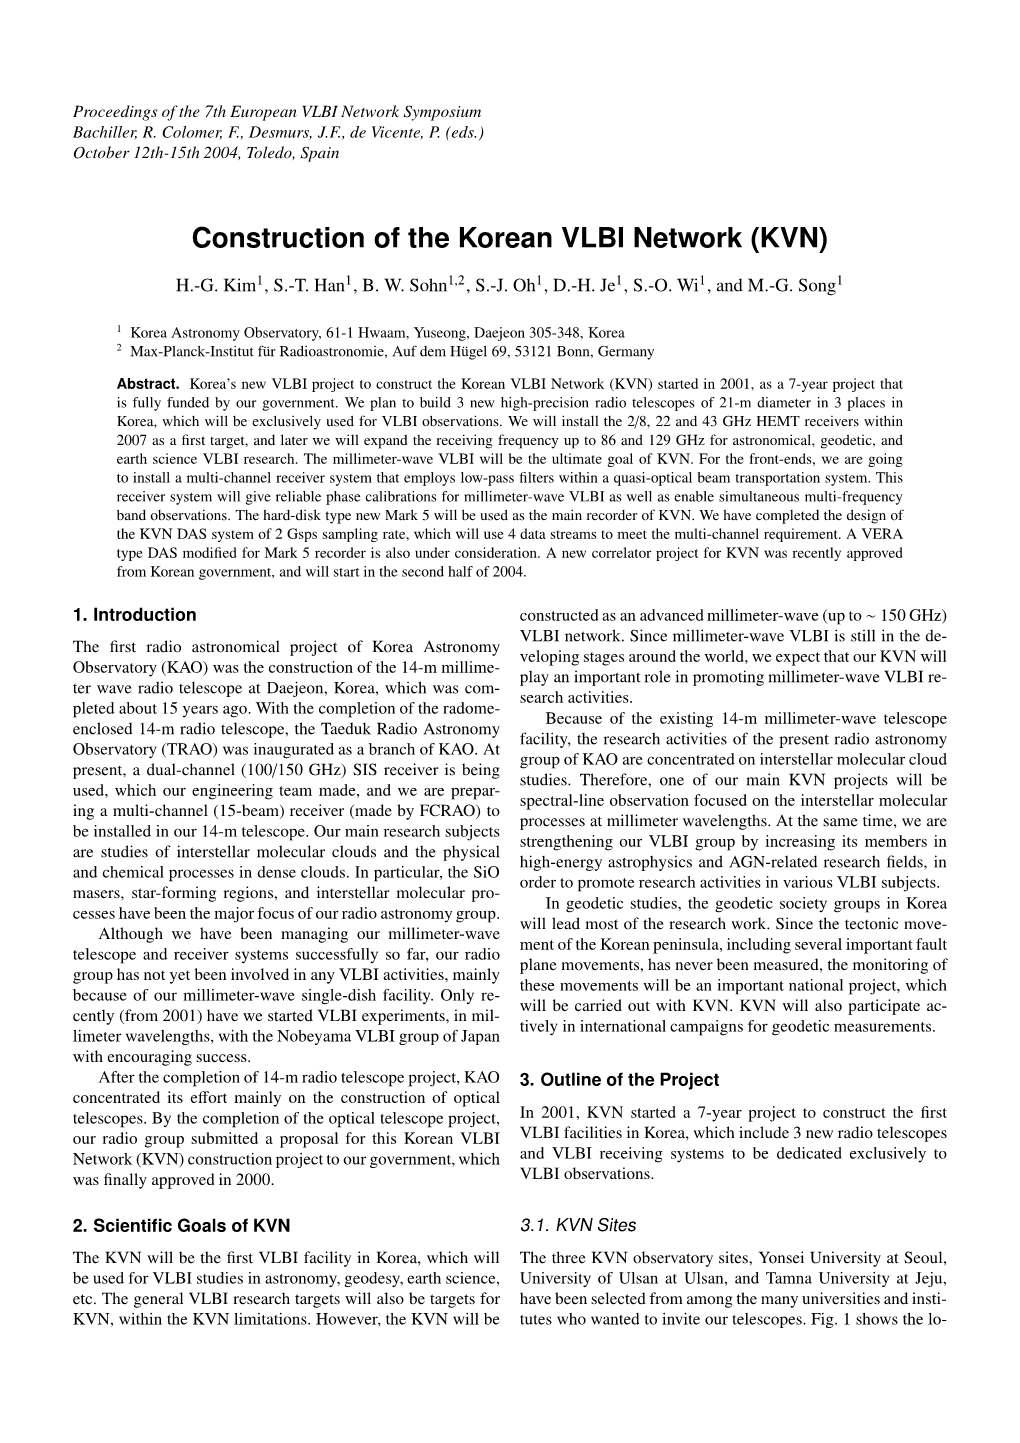 Construction of the Korean VLBI Network (KVN)